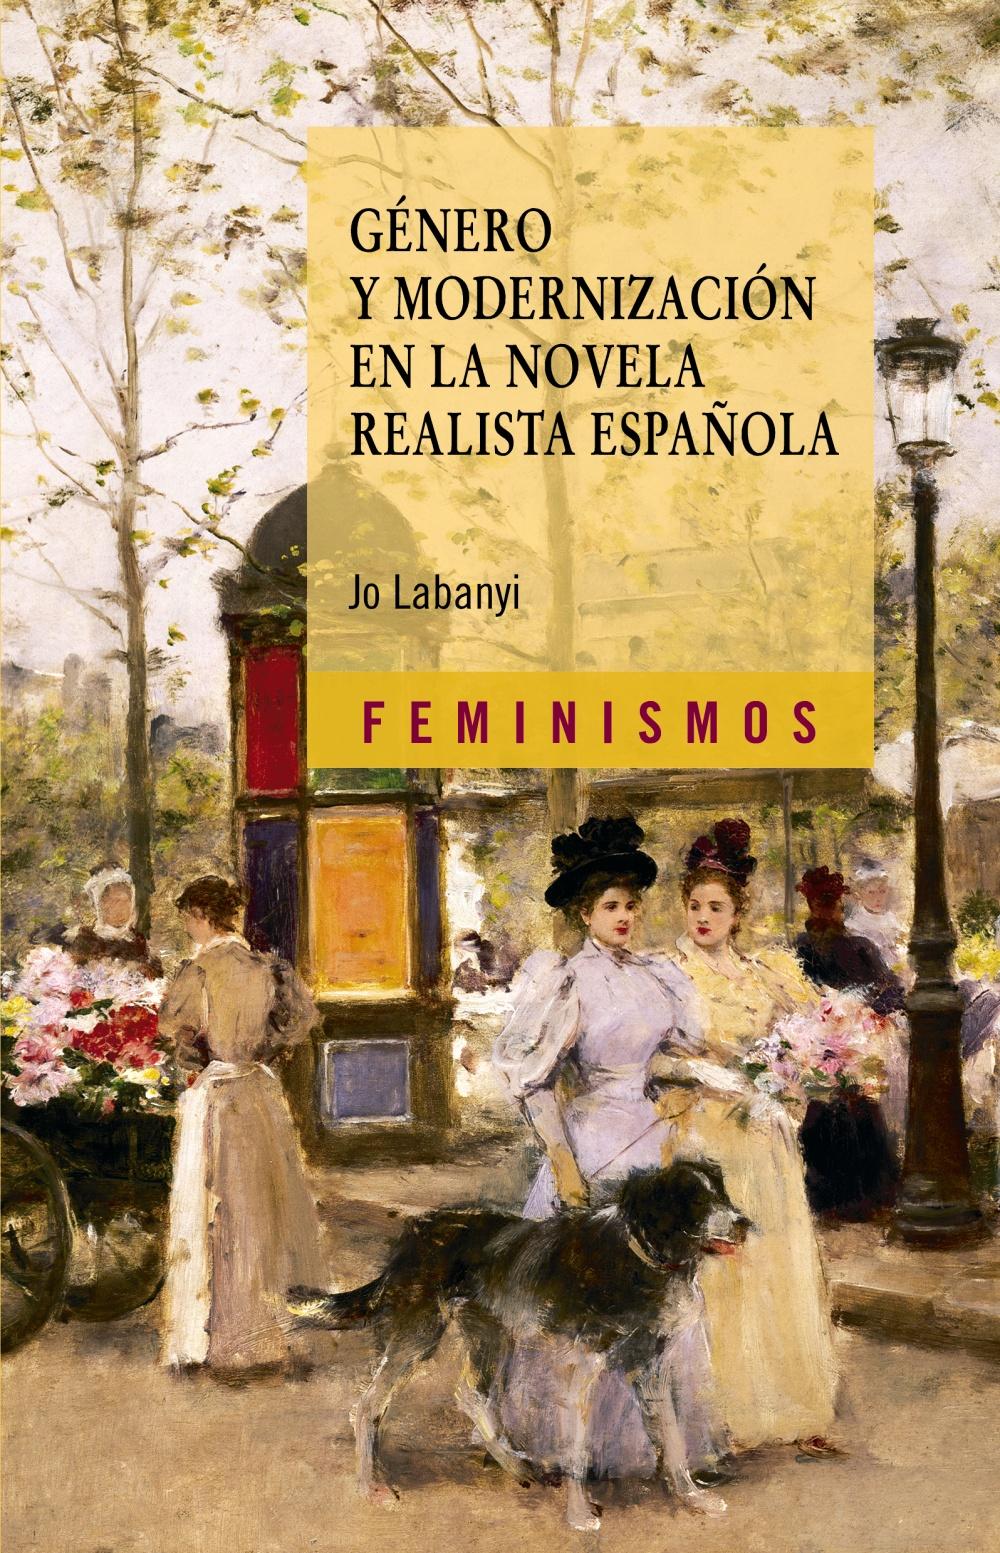 Género y modernización en la novela realista española